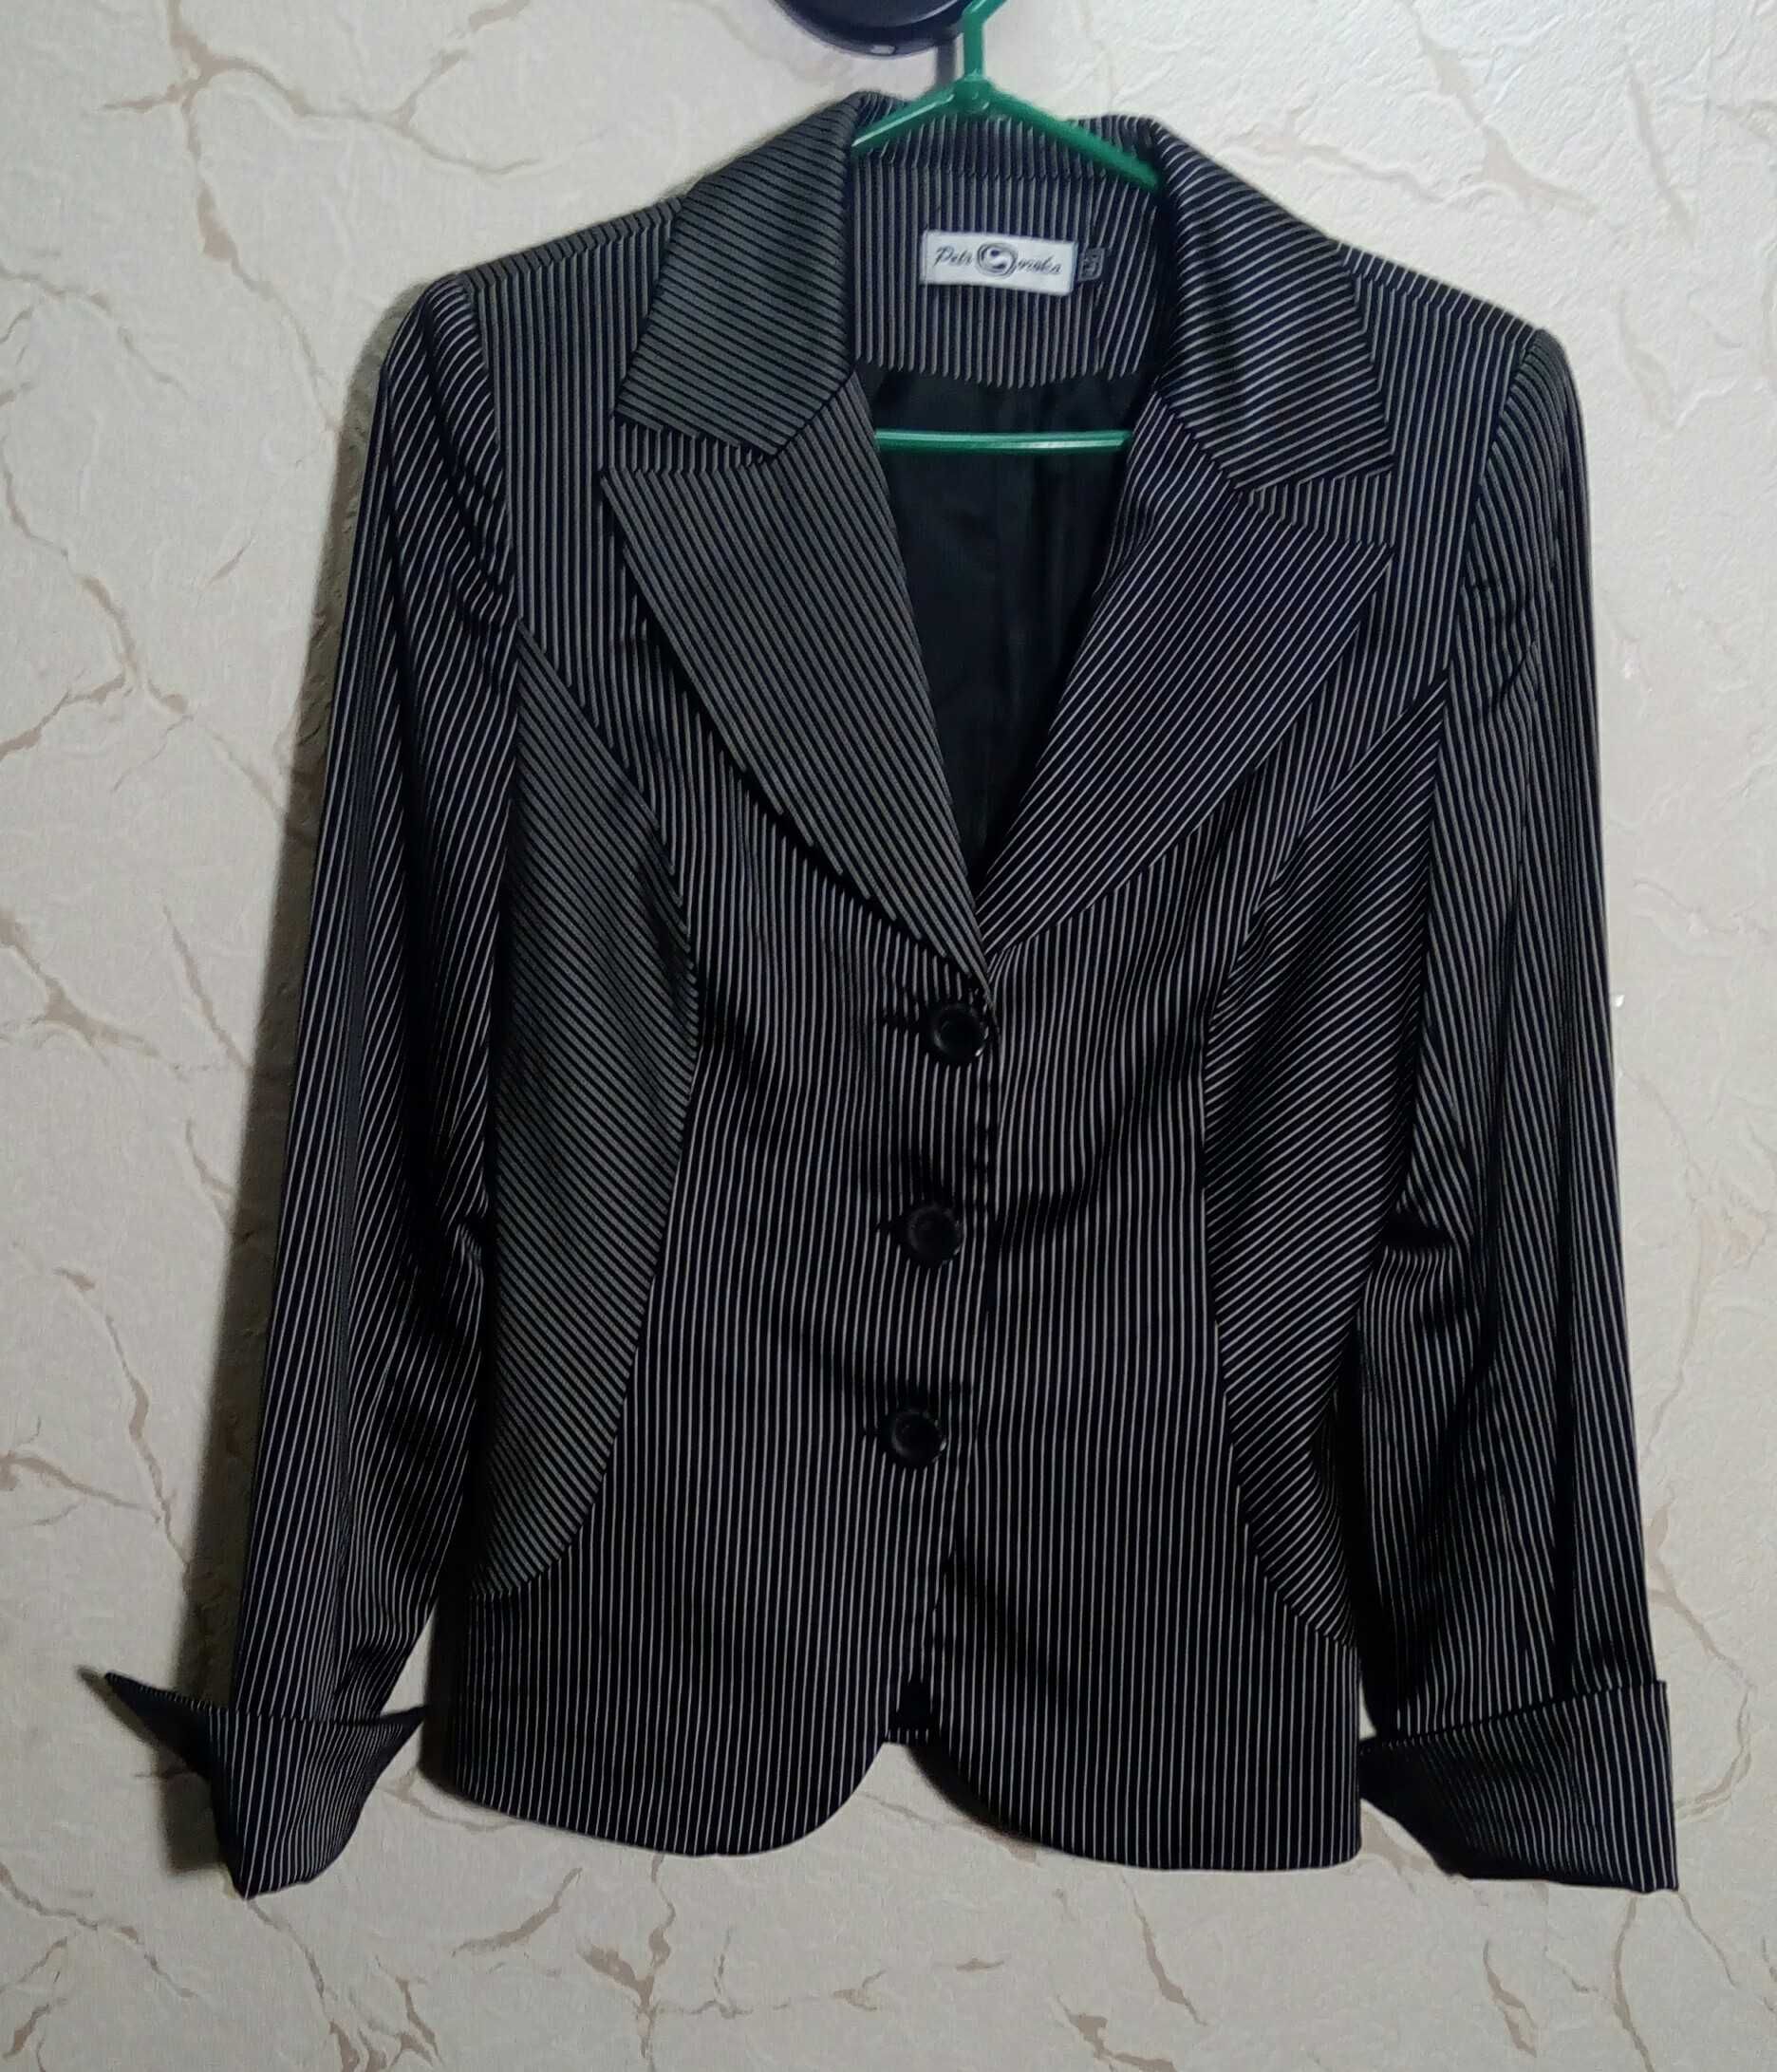 Пиджак классический черный в тонкую белую полоску. Размер 44.